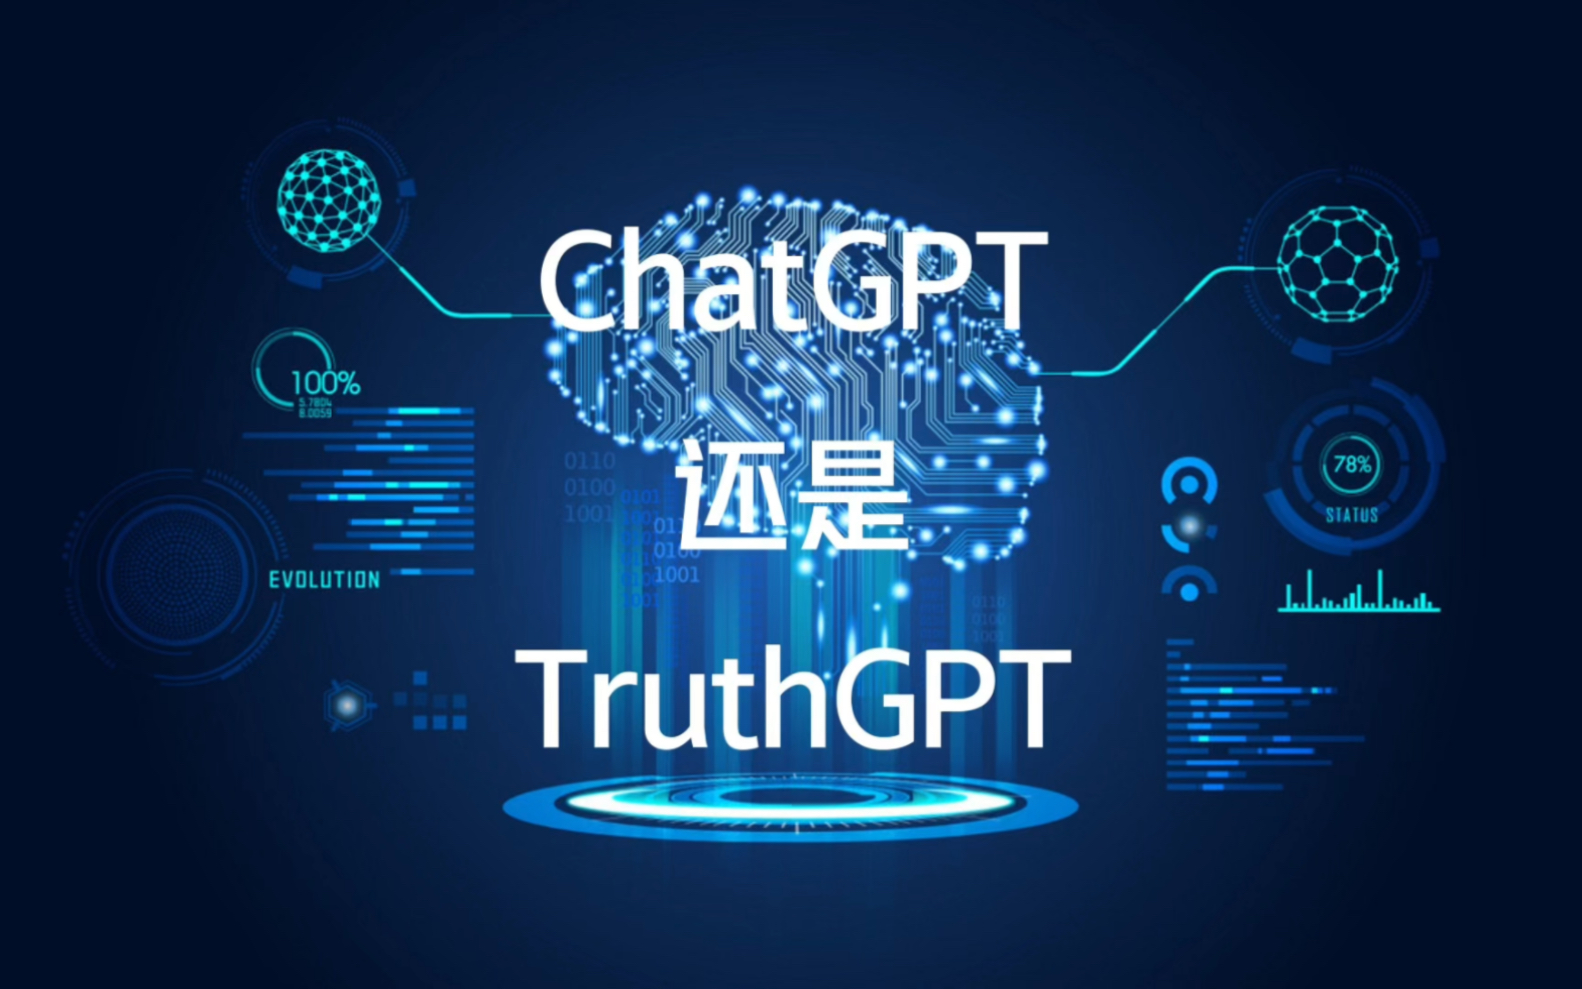 马斯克将TruthGPT挑战ChatGPT